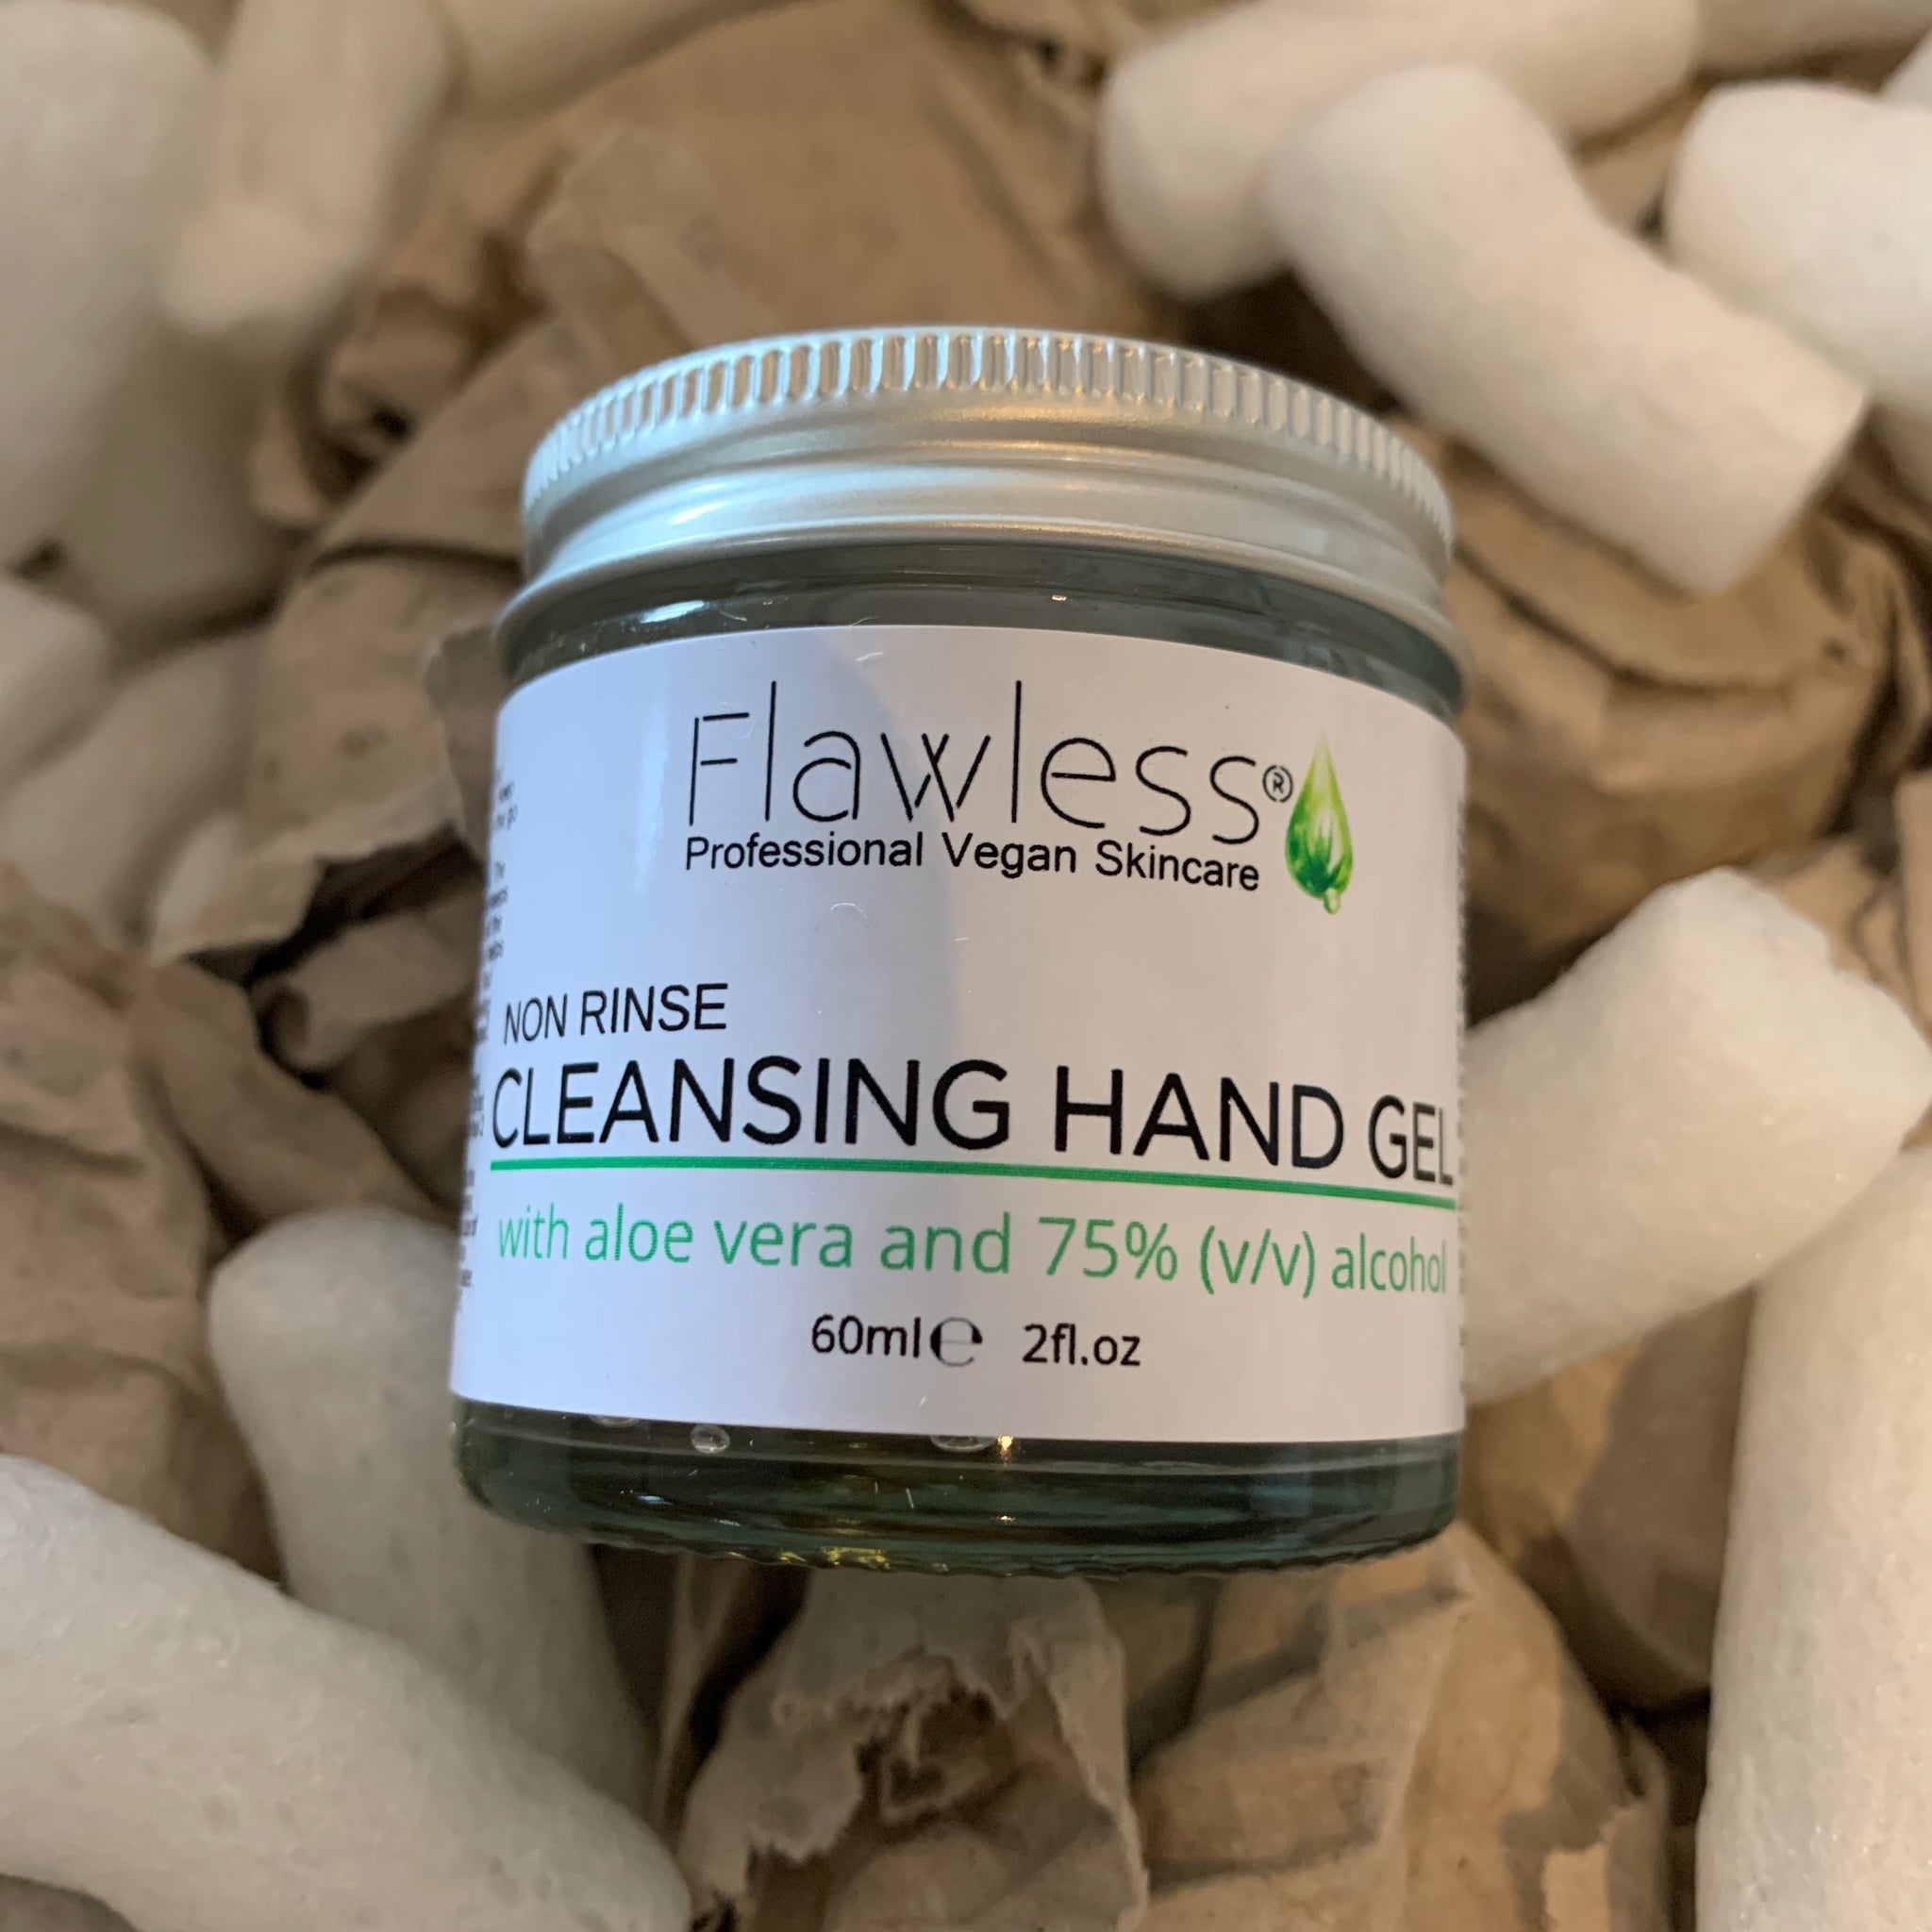 Hand cleansing gel - various